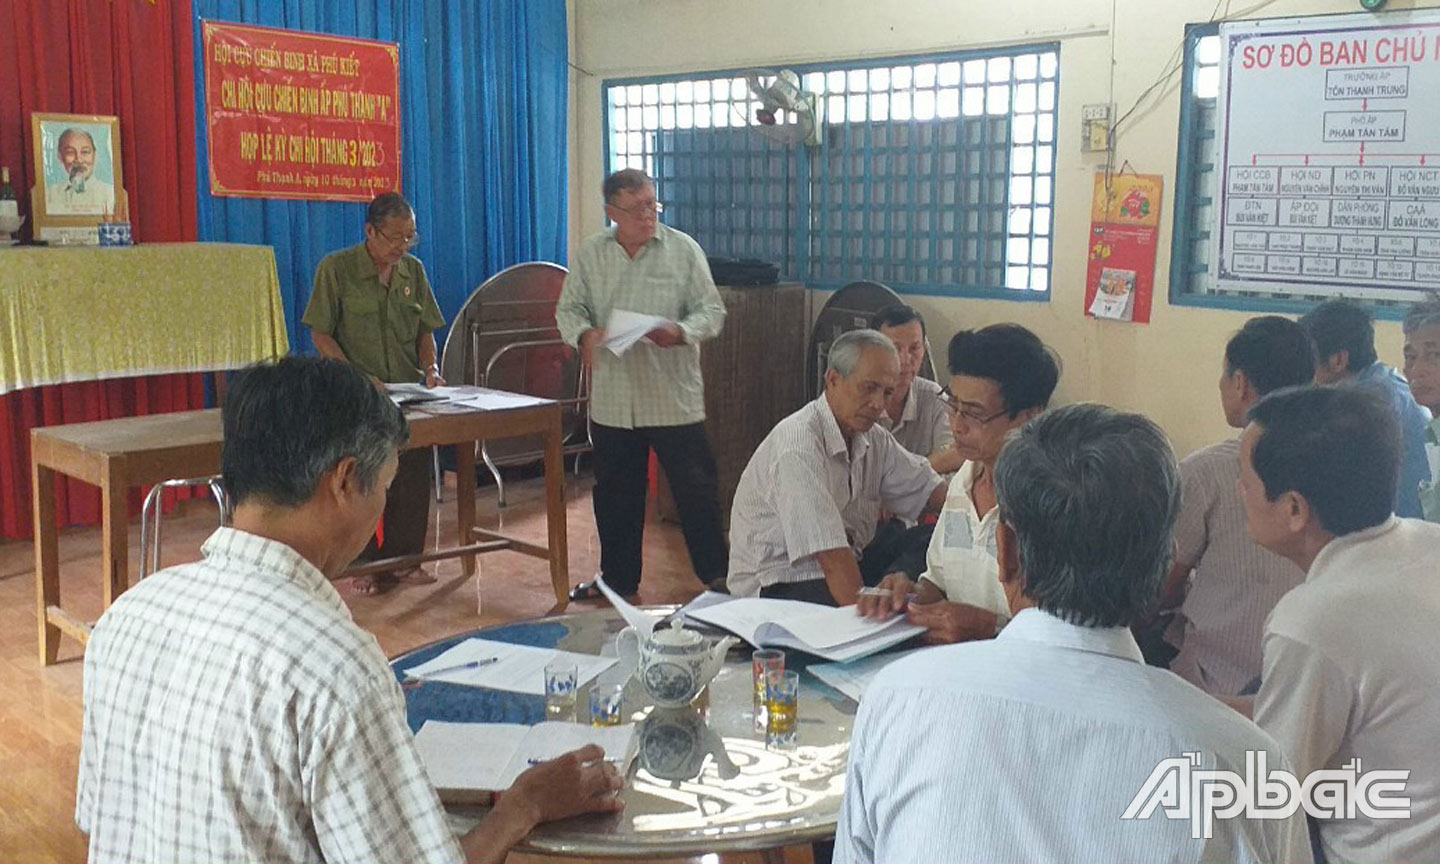 Cuộc họp sinh hoạt chi bộ hằng tháng tại ấp Phú Thạnh A, xã Phú Kiết, huyện Chợ Gạo. (Ảnh: Hội Cựu chiến binh xã Phú Kiết cung cấp).